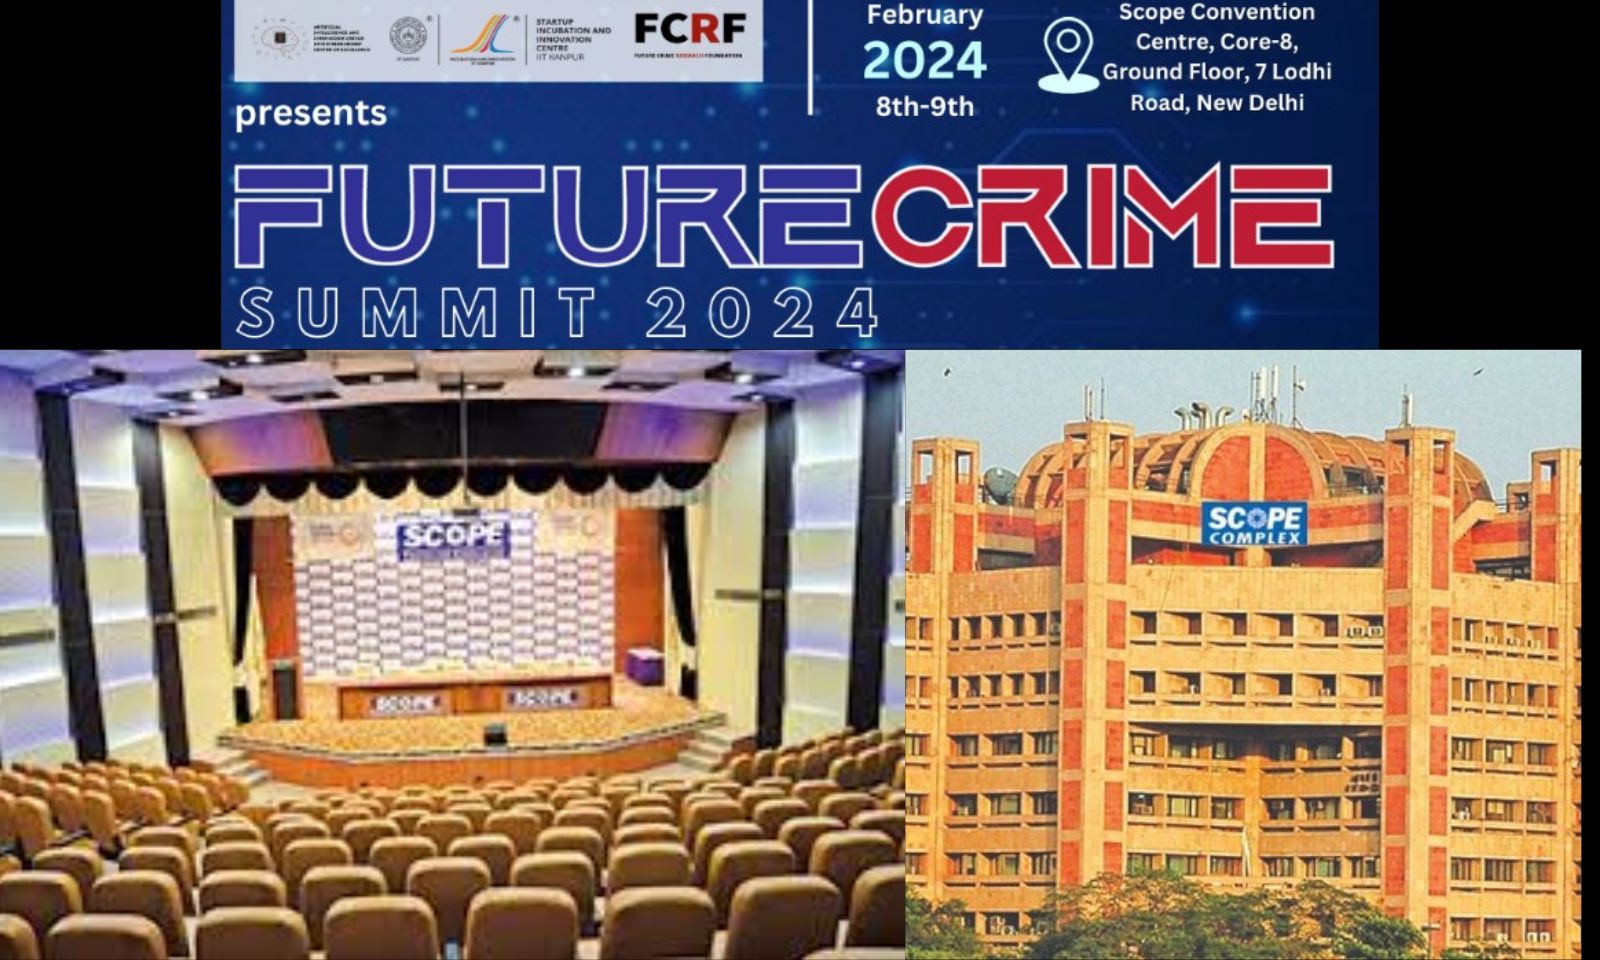 Scope Convention Centre, New Delhi To Host FutureCrime Summit 2024